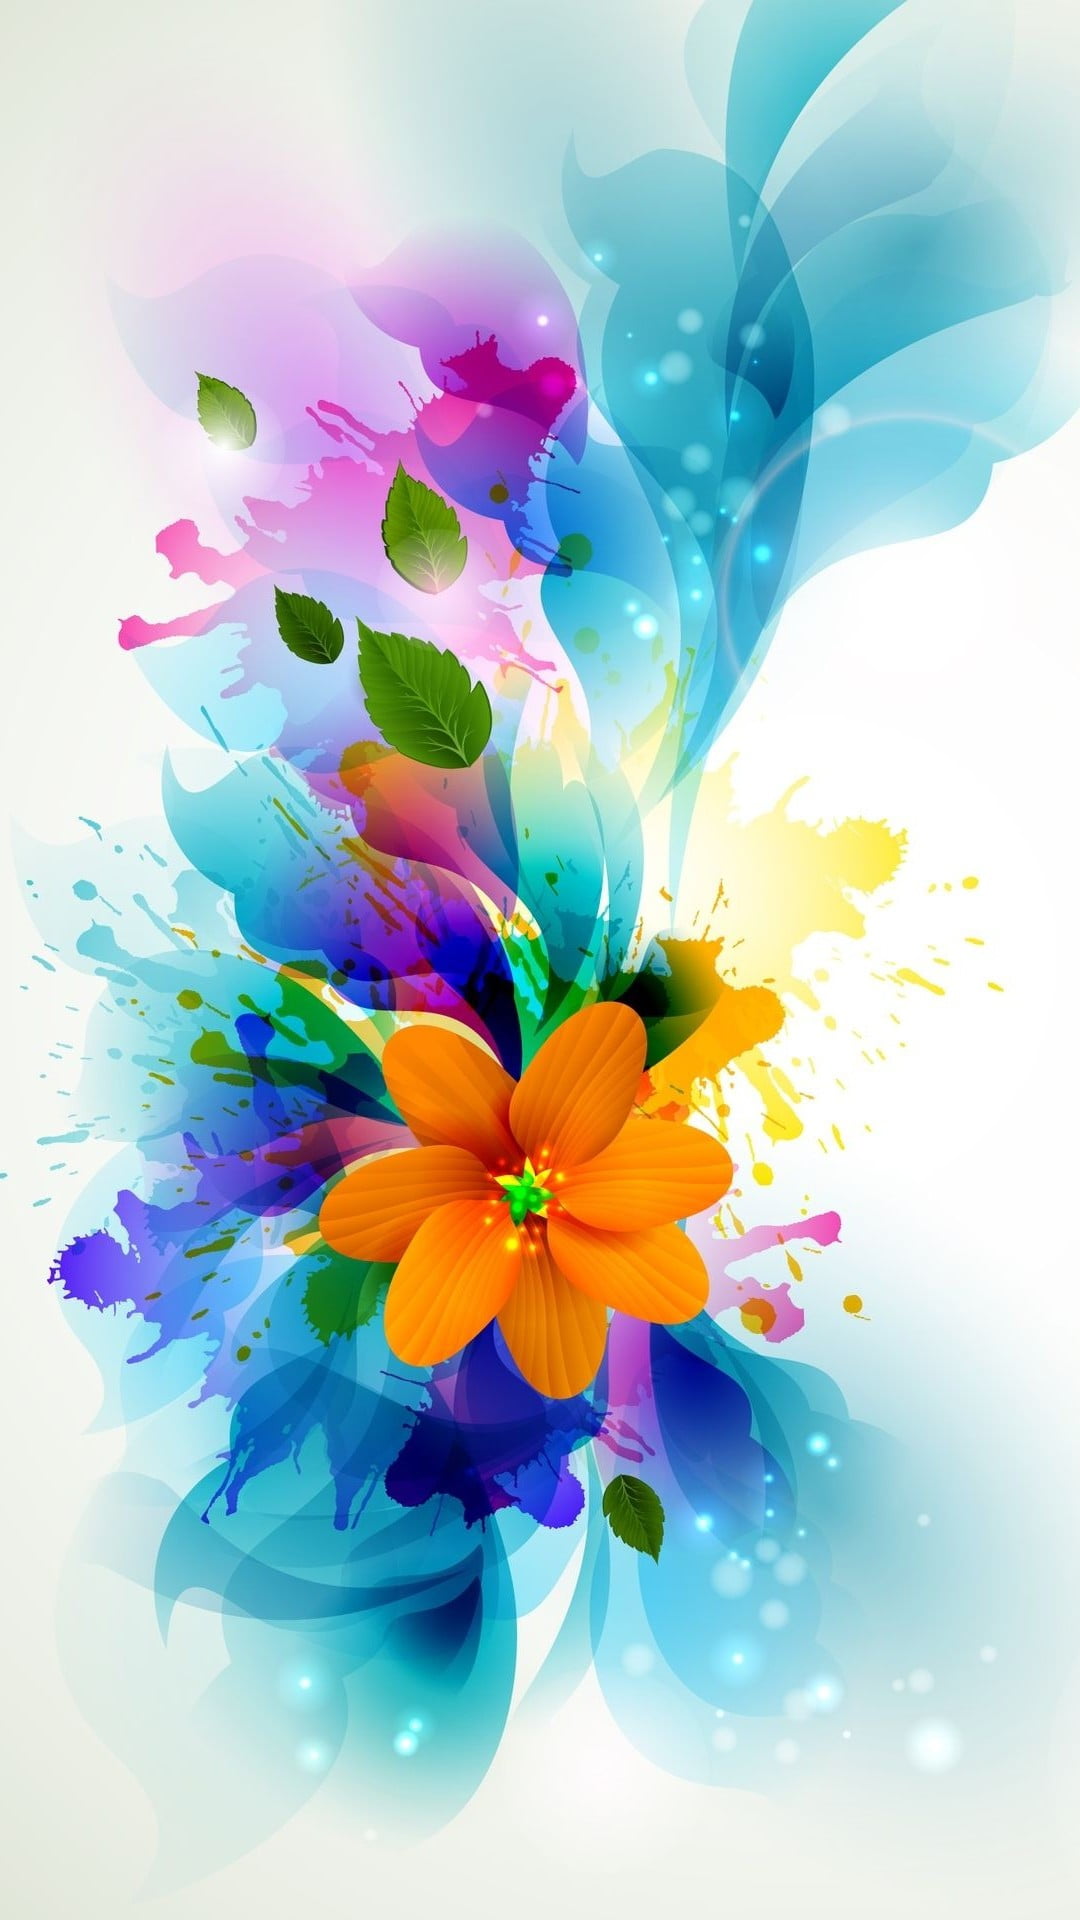 Flowers Digital Art Iphone Wallpapers